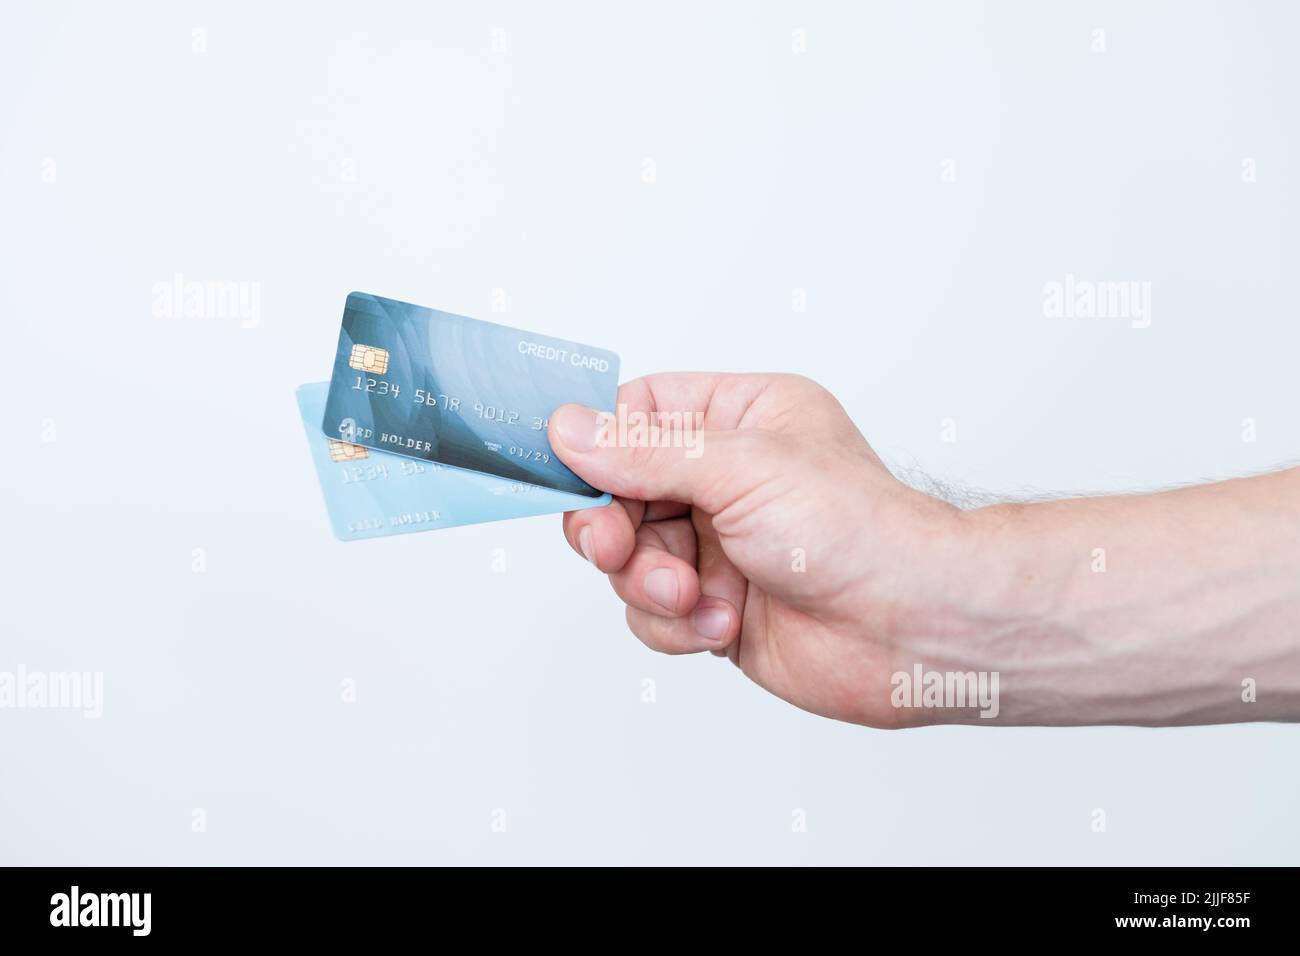 las finanzas de pago en línea de la tarjeta de crédito manejan el dinero Foto de stock